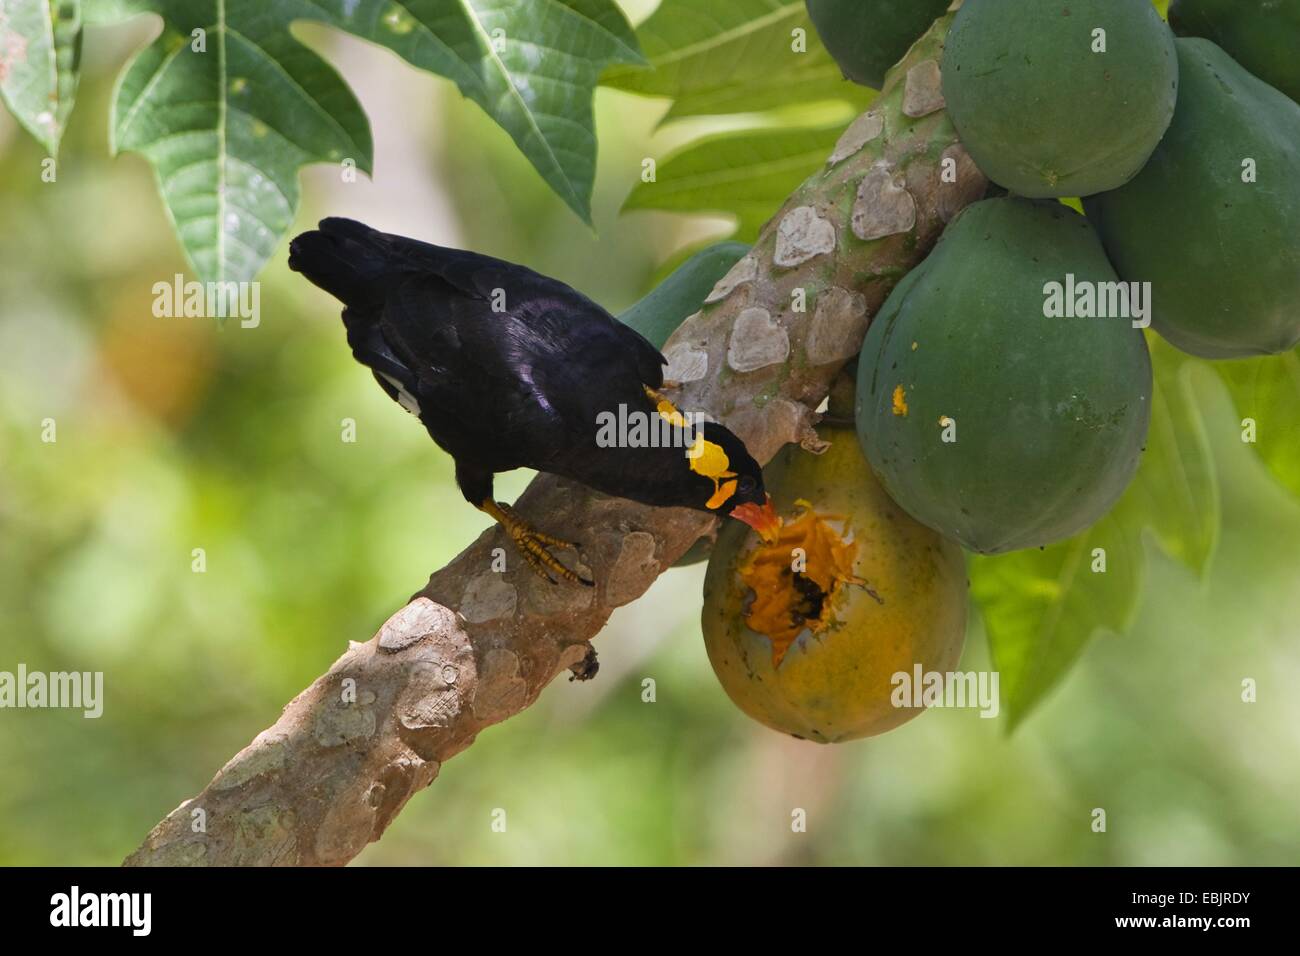 Birds papaya hi-res stock photography and images - Alamy